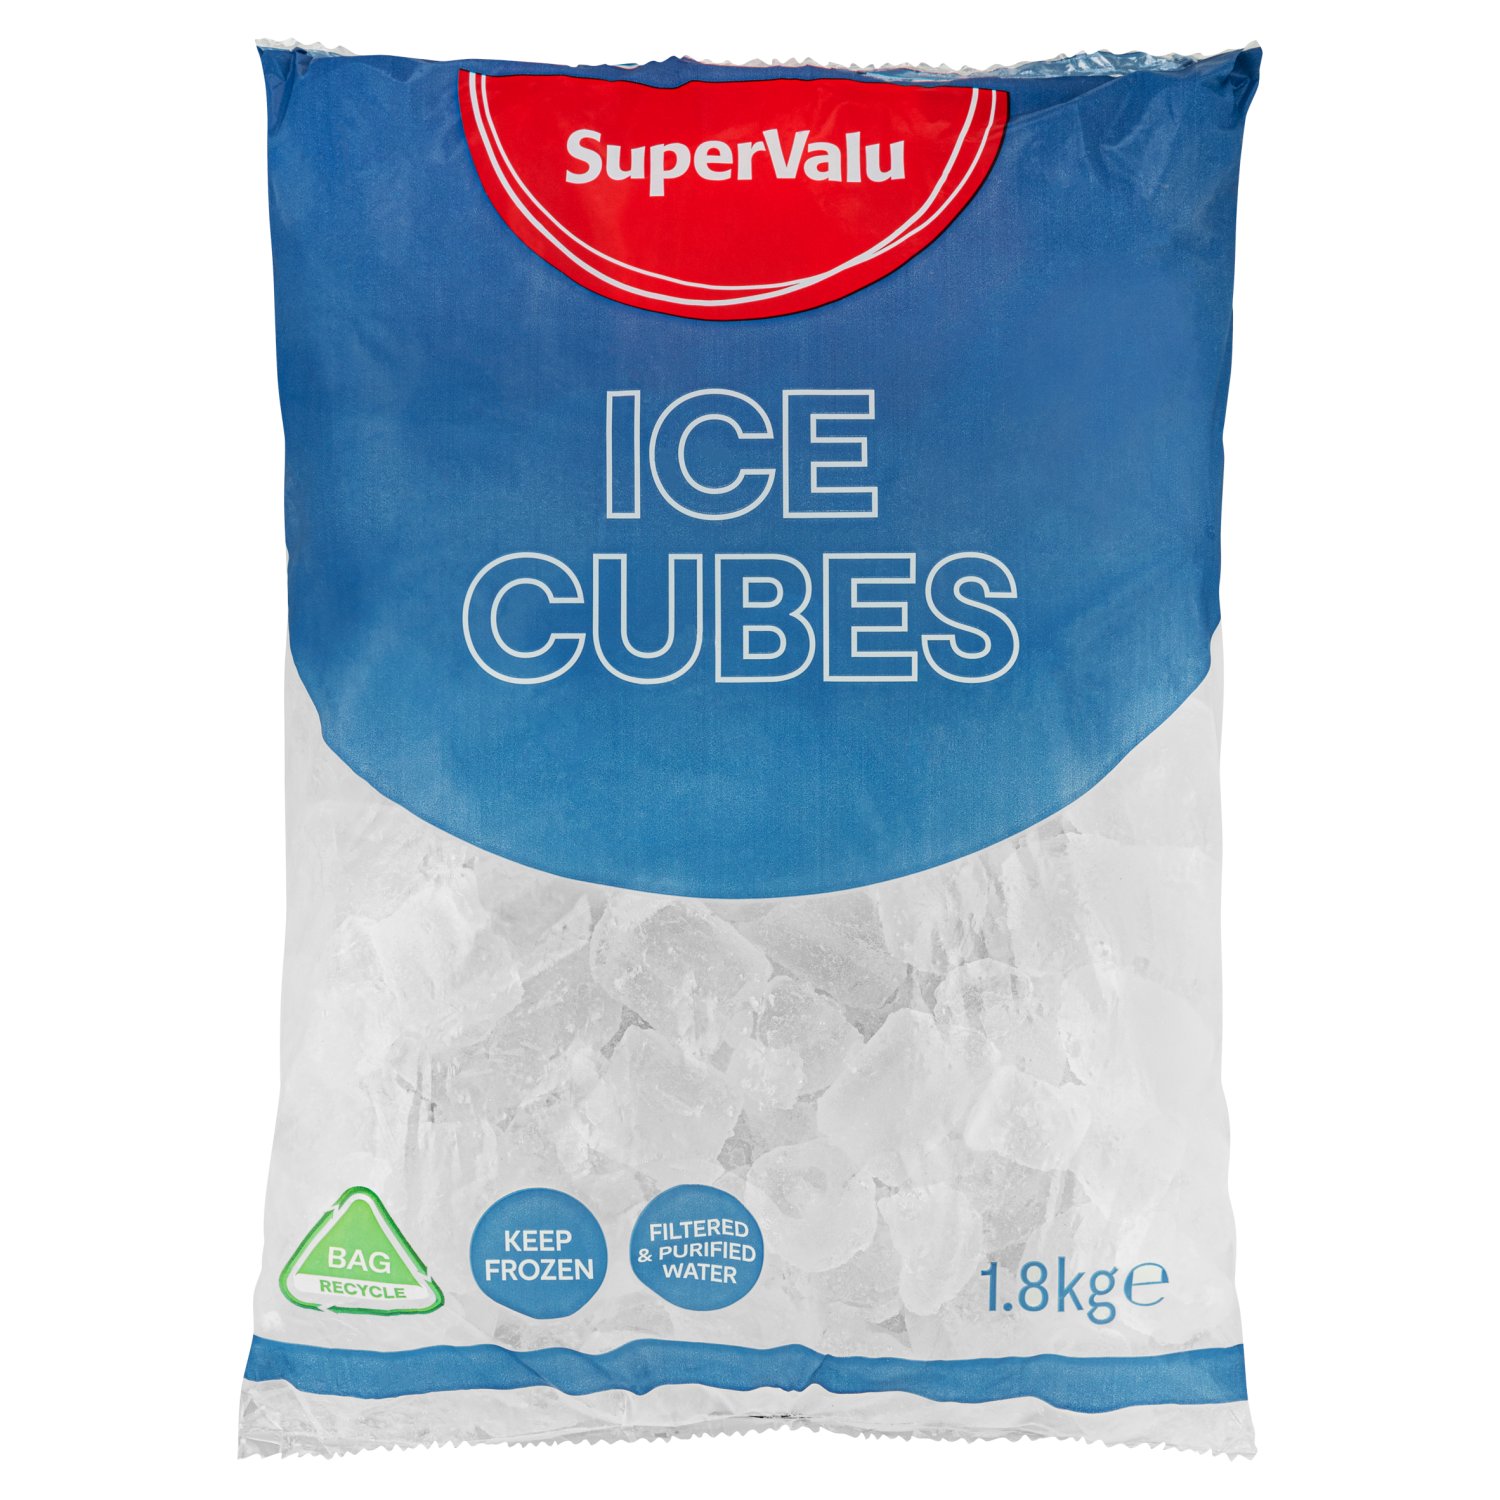 SuperValu Ice Cubes (1.8 kg)